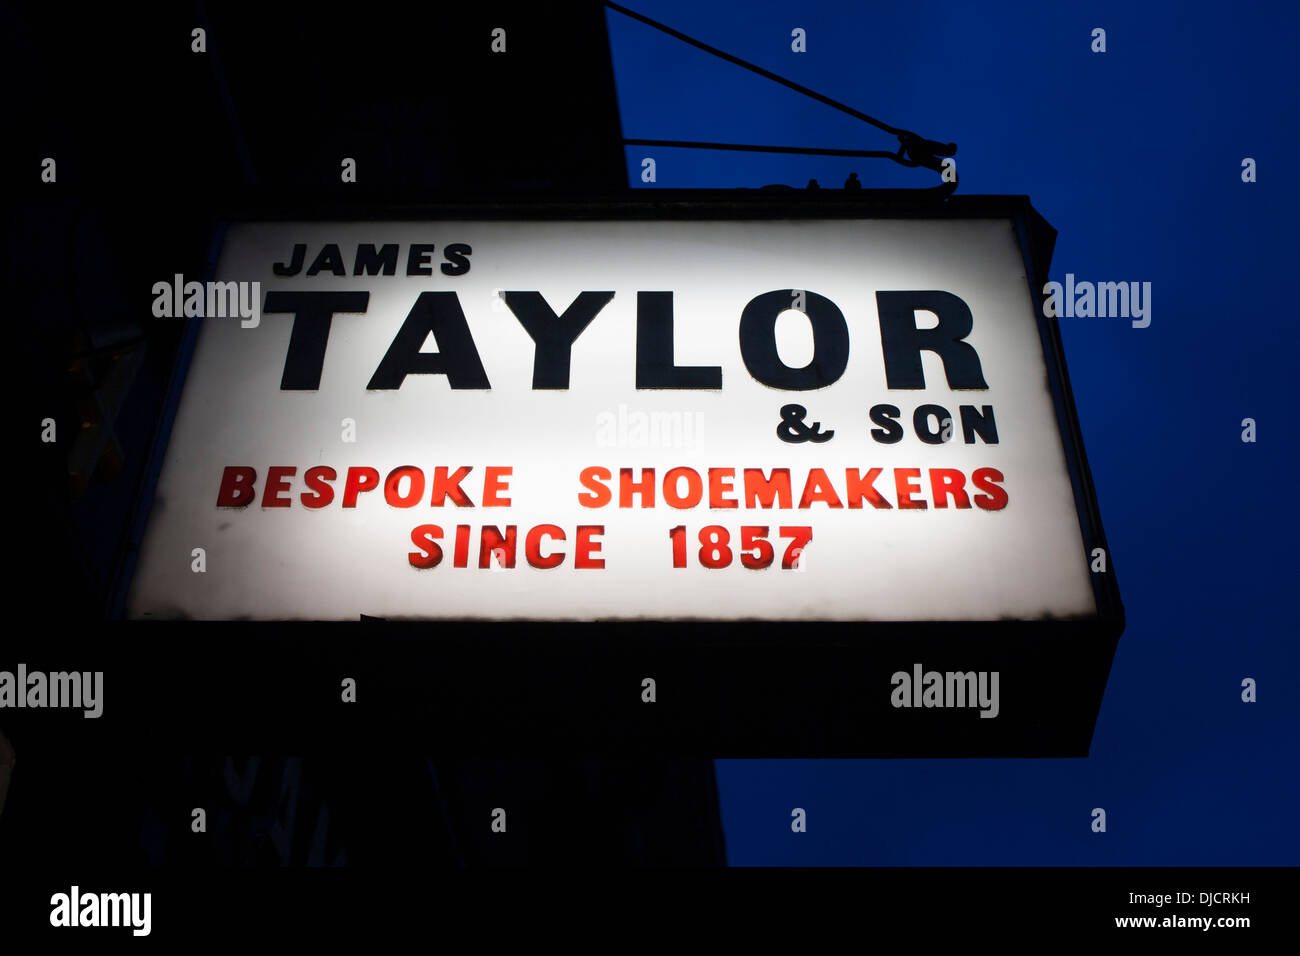 James Taylor & Son Bespoke Shoemakers Since 1857 sign outside shoe / shoemaker shop at dusk / night Marylebone London England UK Stock Photo